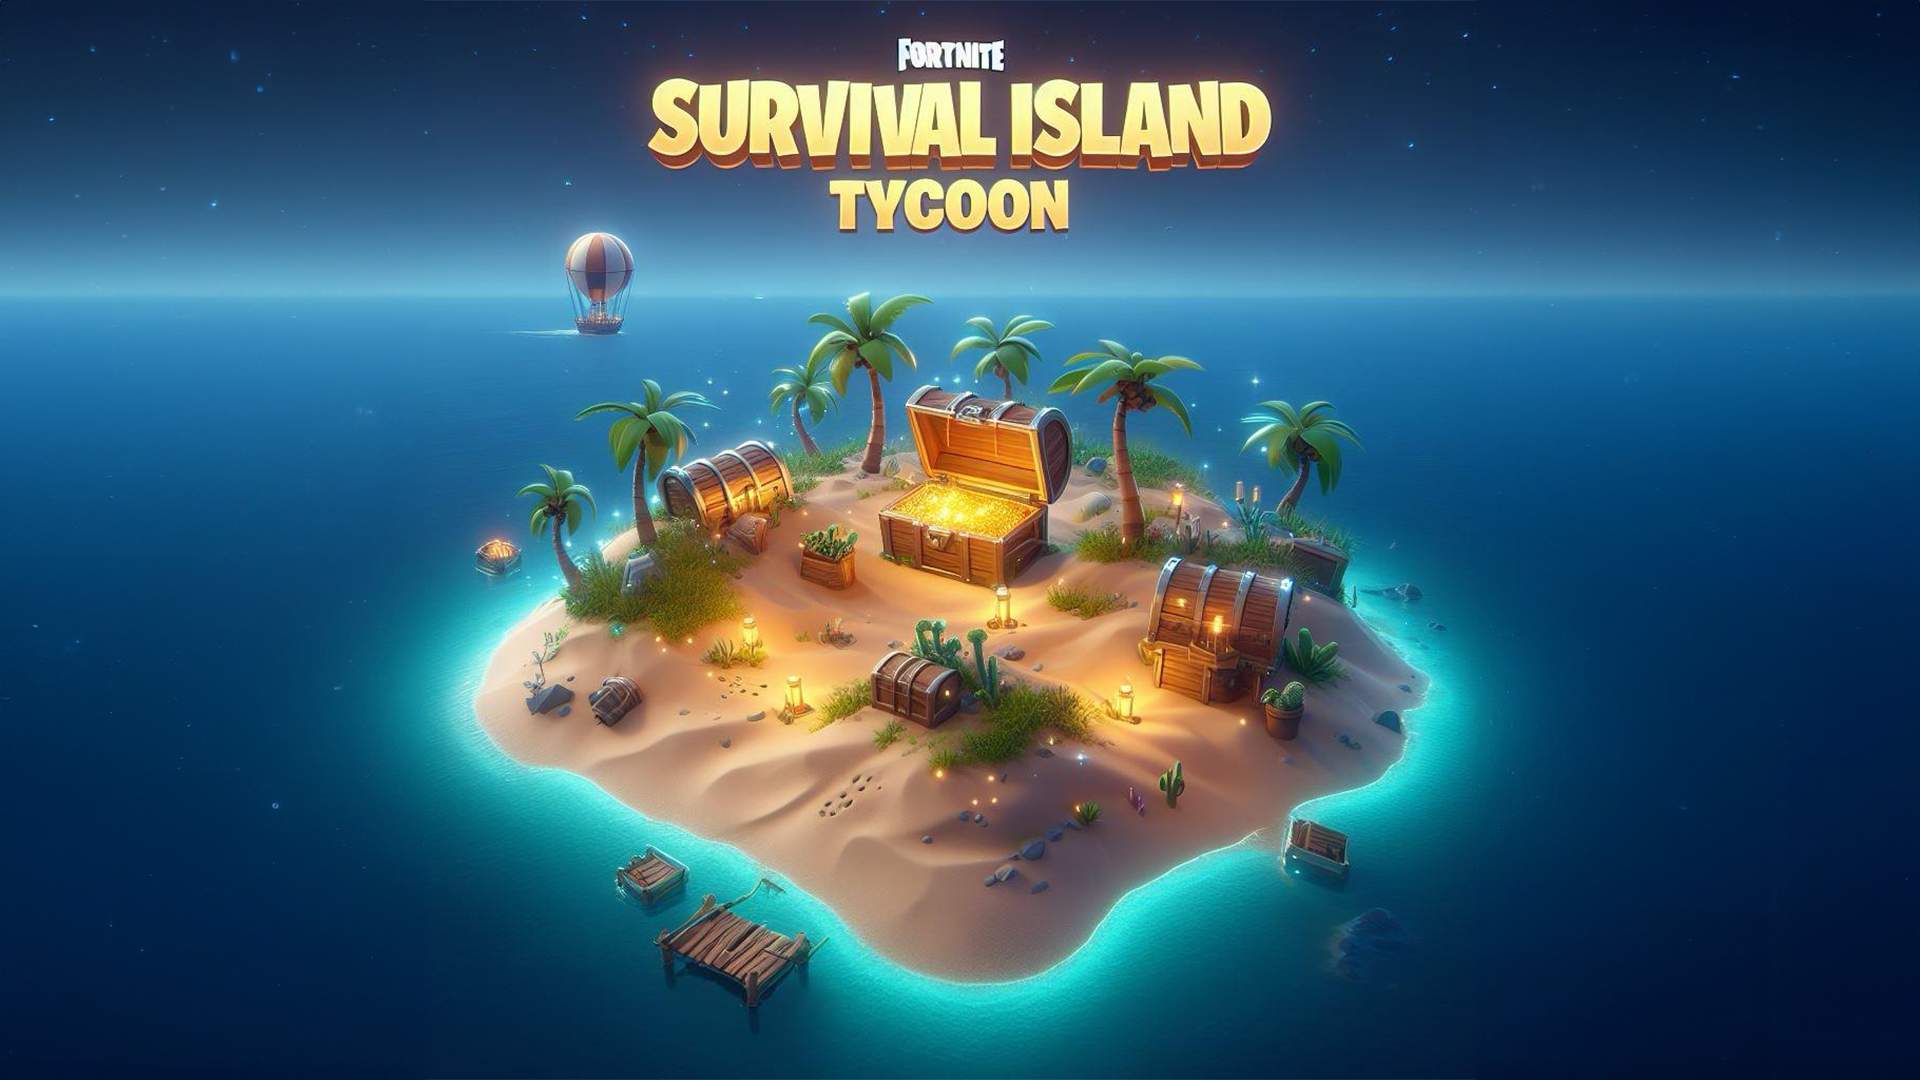 Survival Island Tycoon